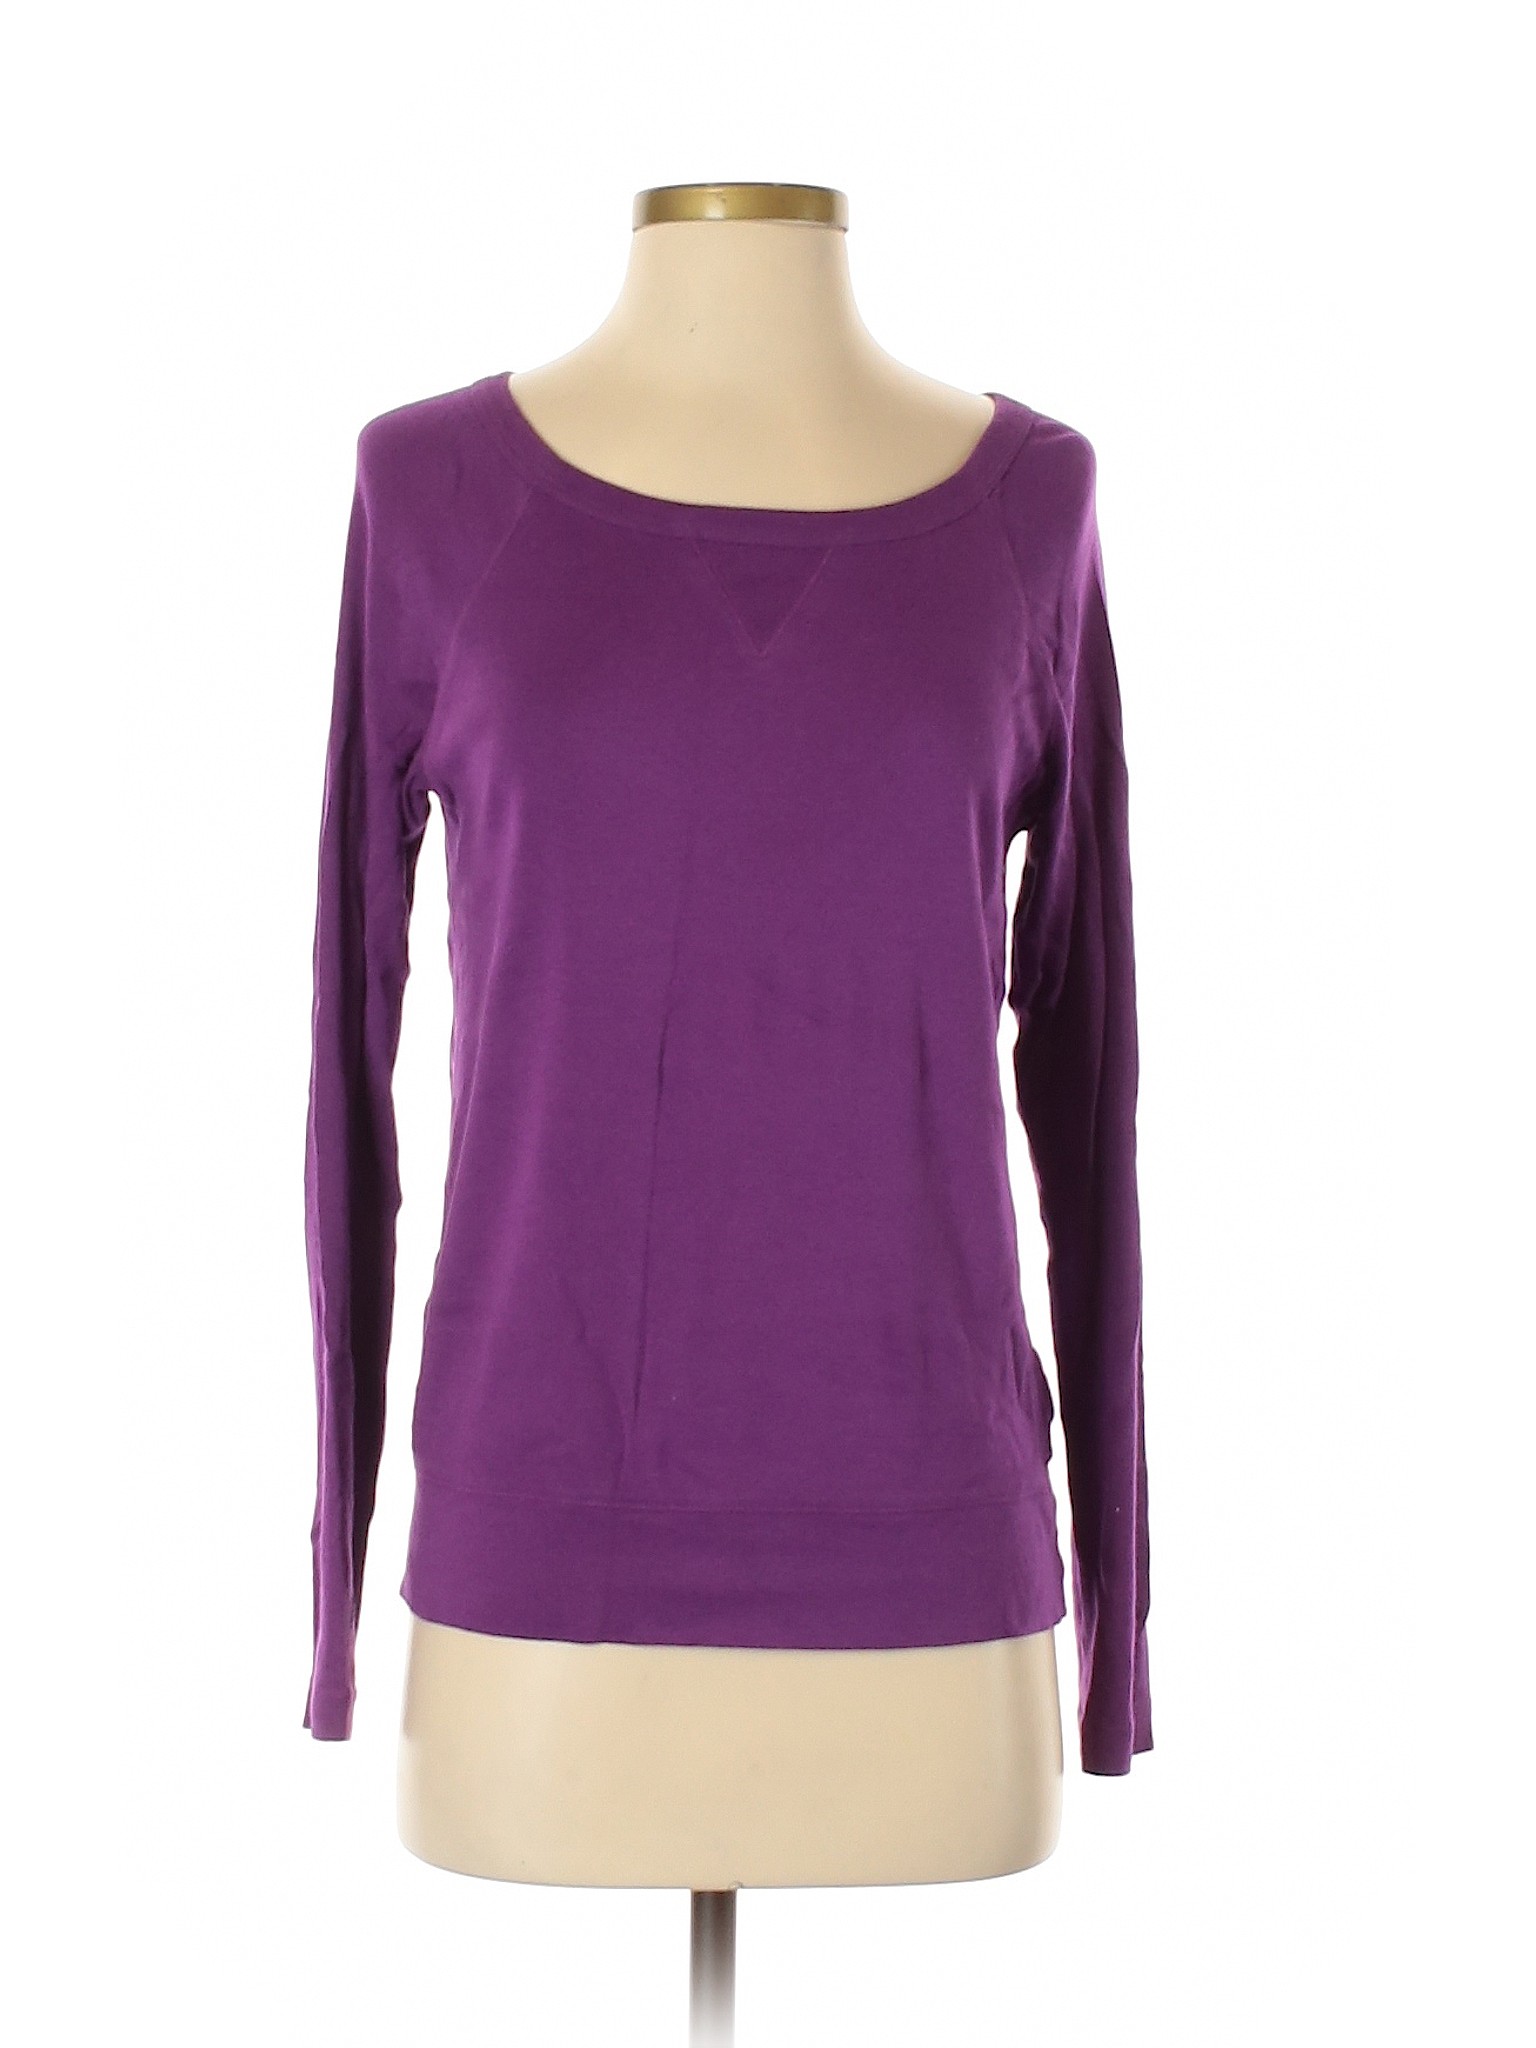 Gap Women Purple Long Sleeve T-Shirt S | eBay